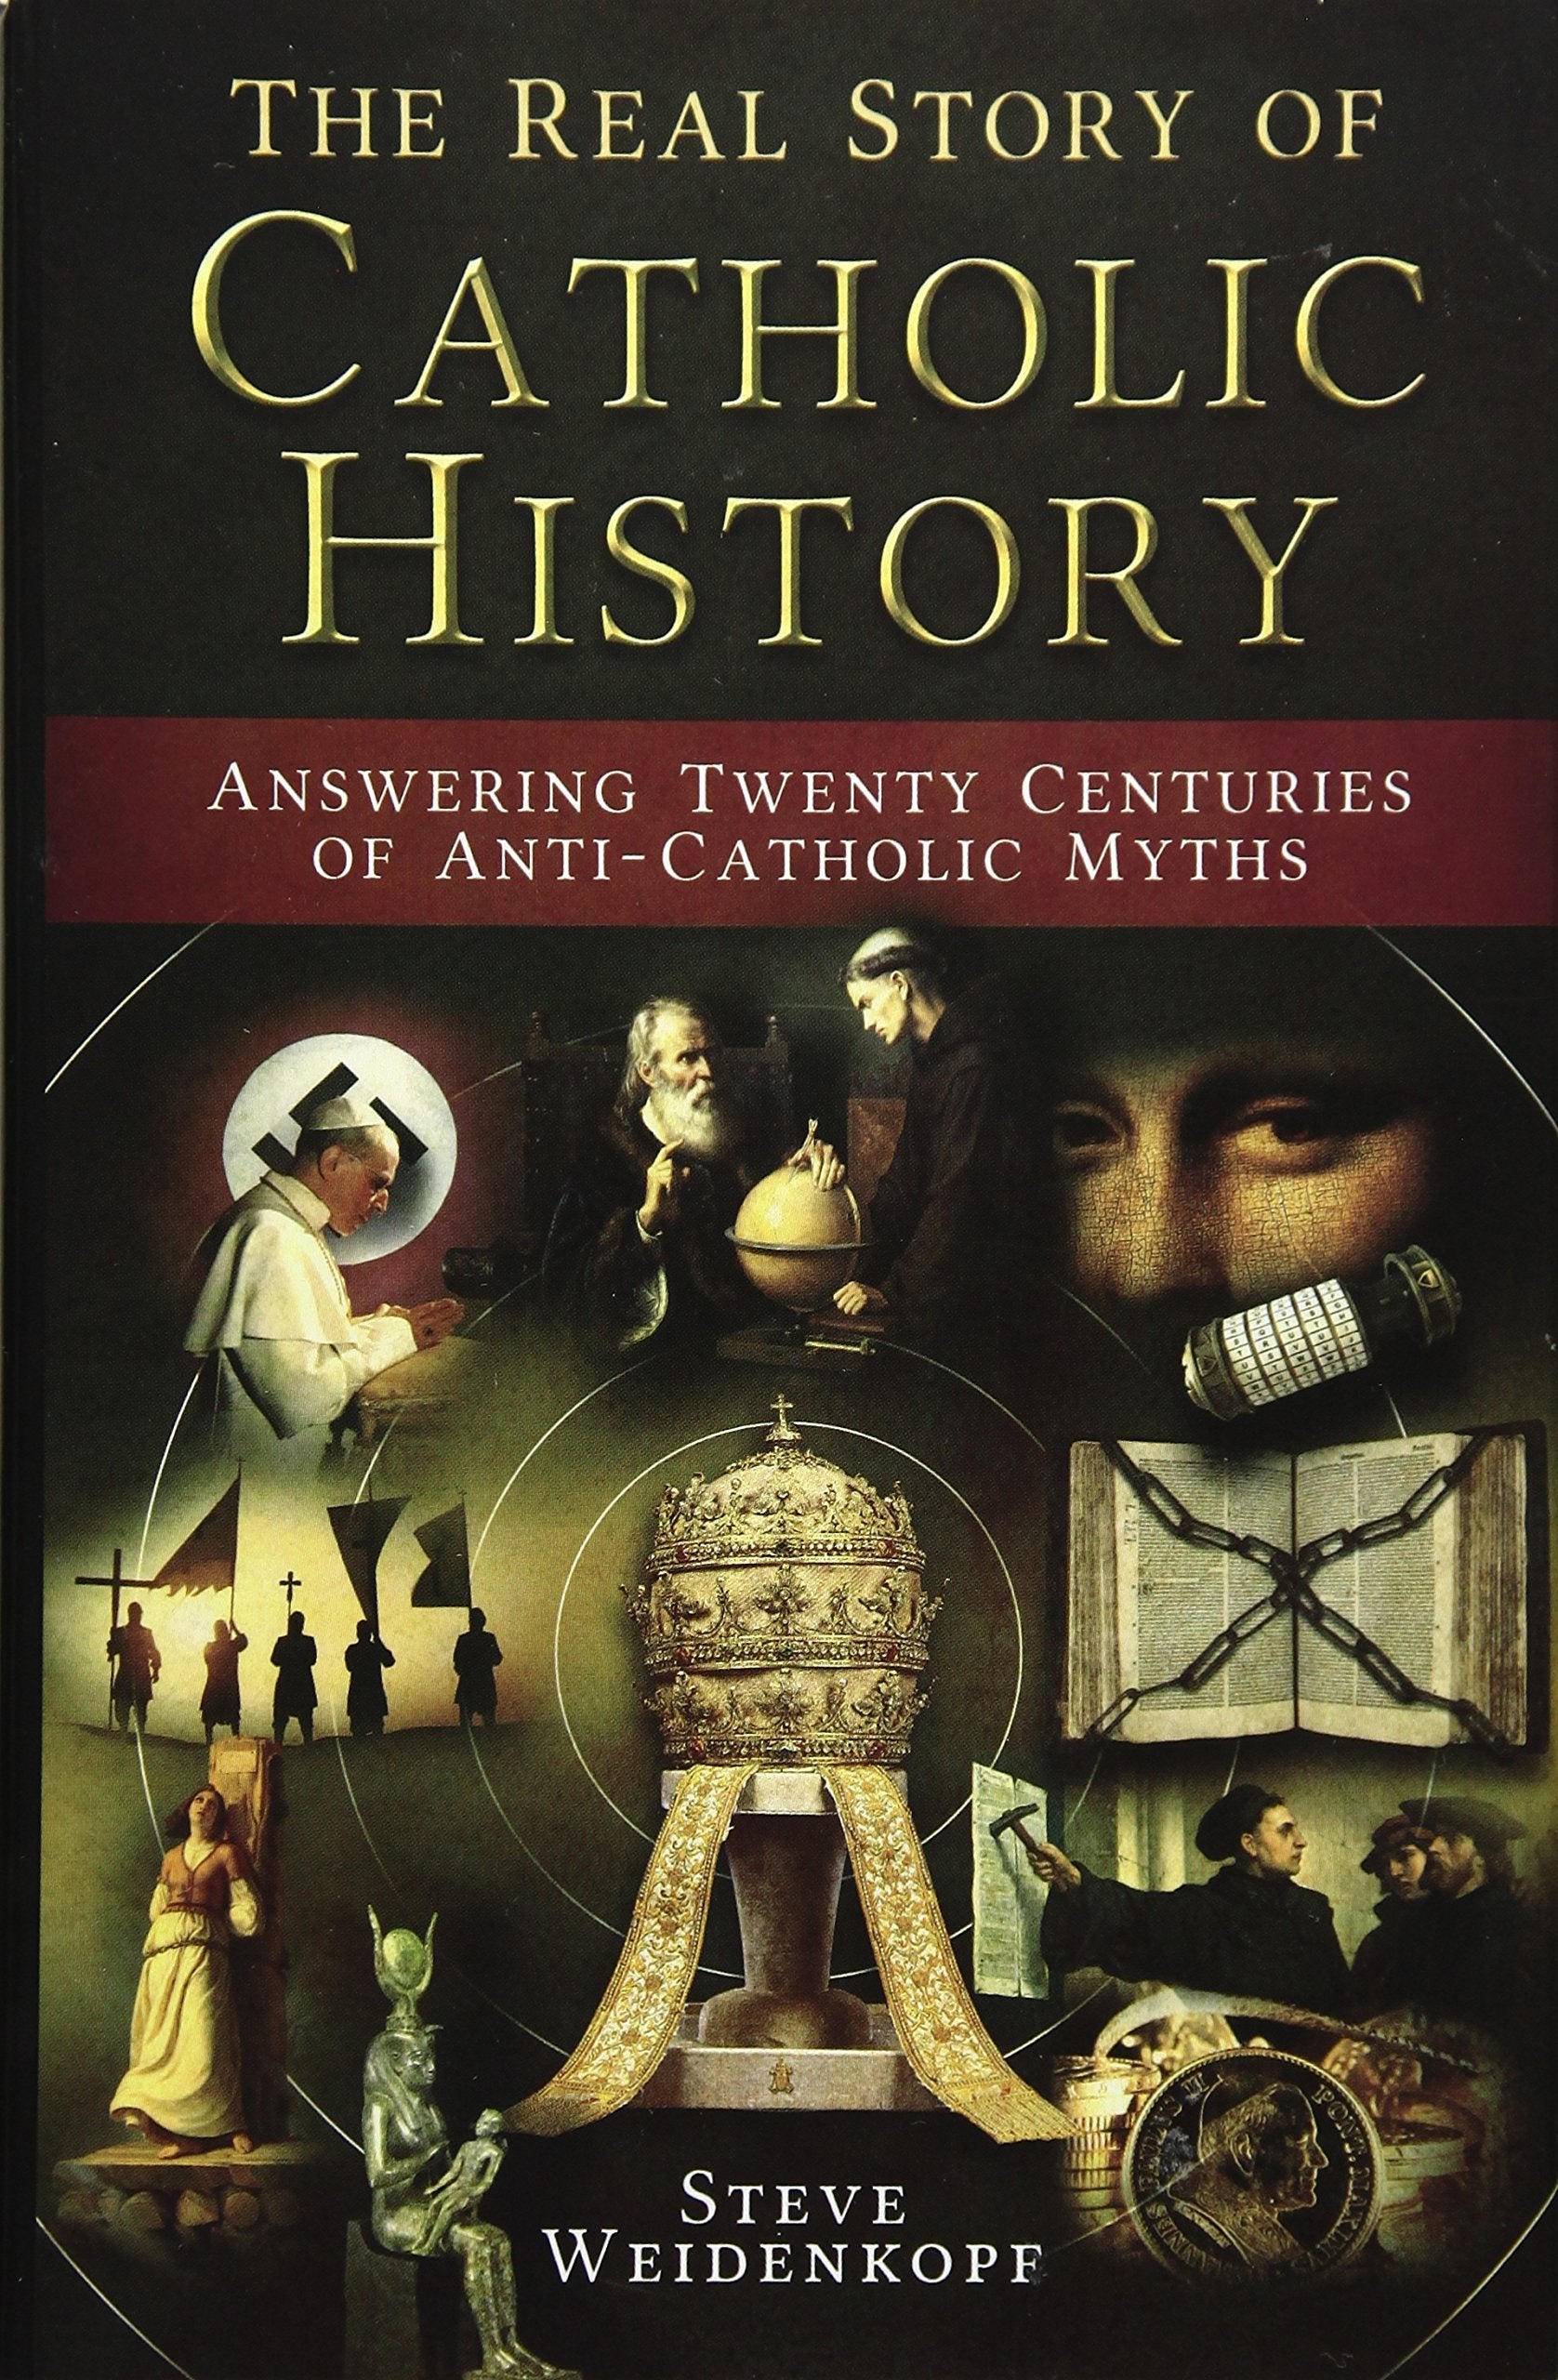 La verdadera historia de la historia católica: respondiendo a veinte siglos de mitos anticatólicos